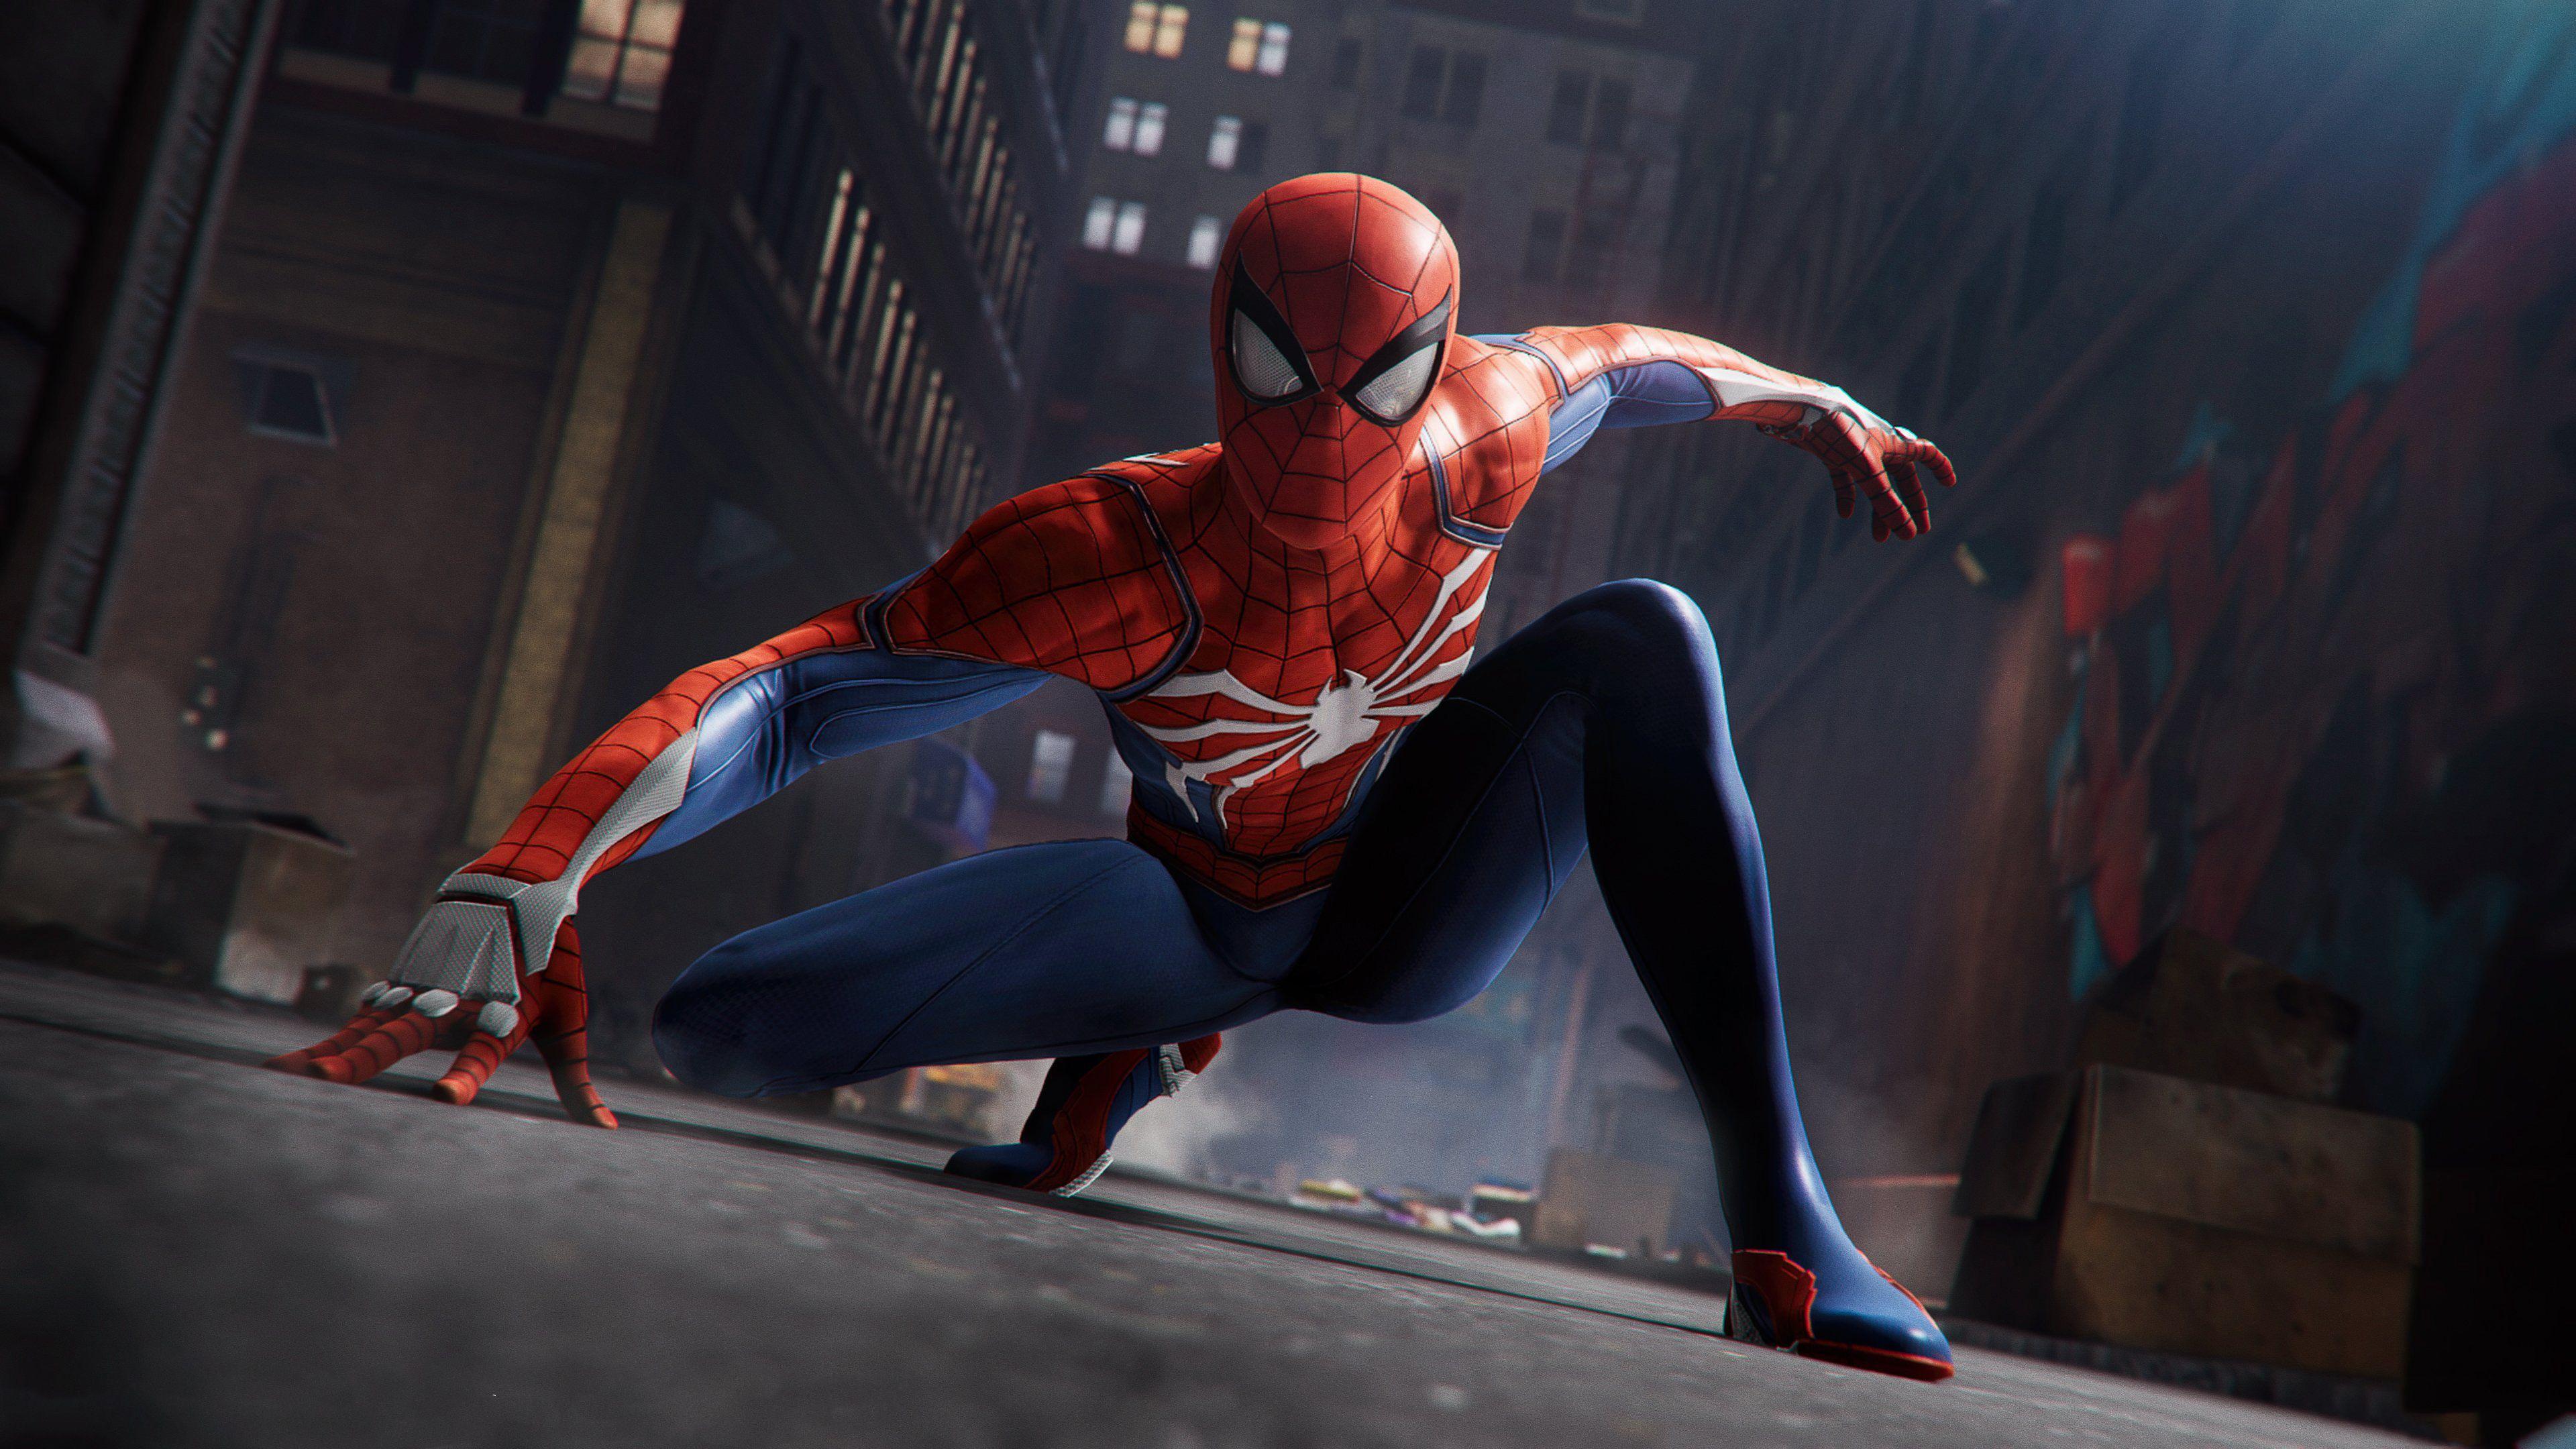 3840x2160 Đây là Hình nền PS4 Spider Man đẹp nhất.  Hay chưng minh tôi sai